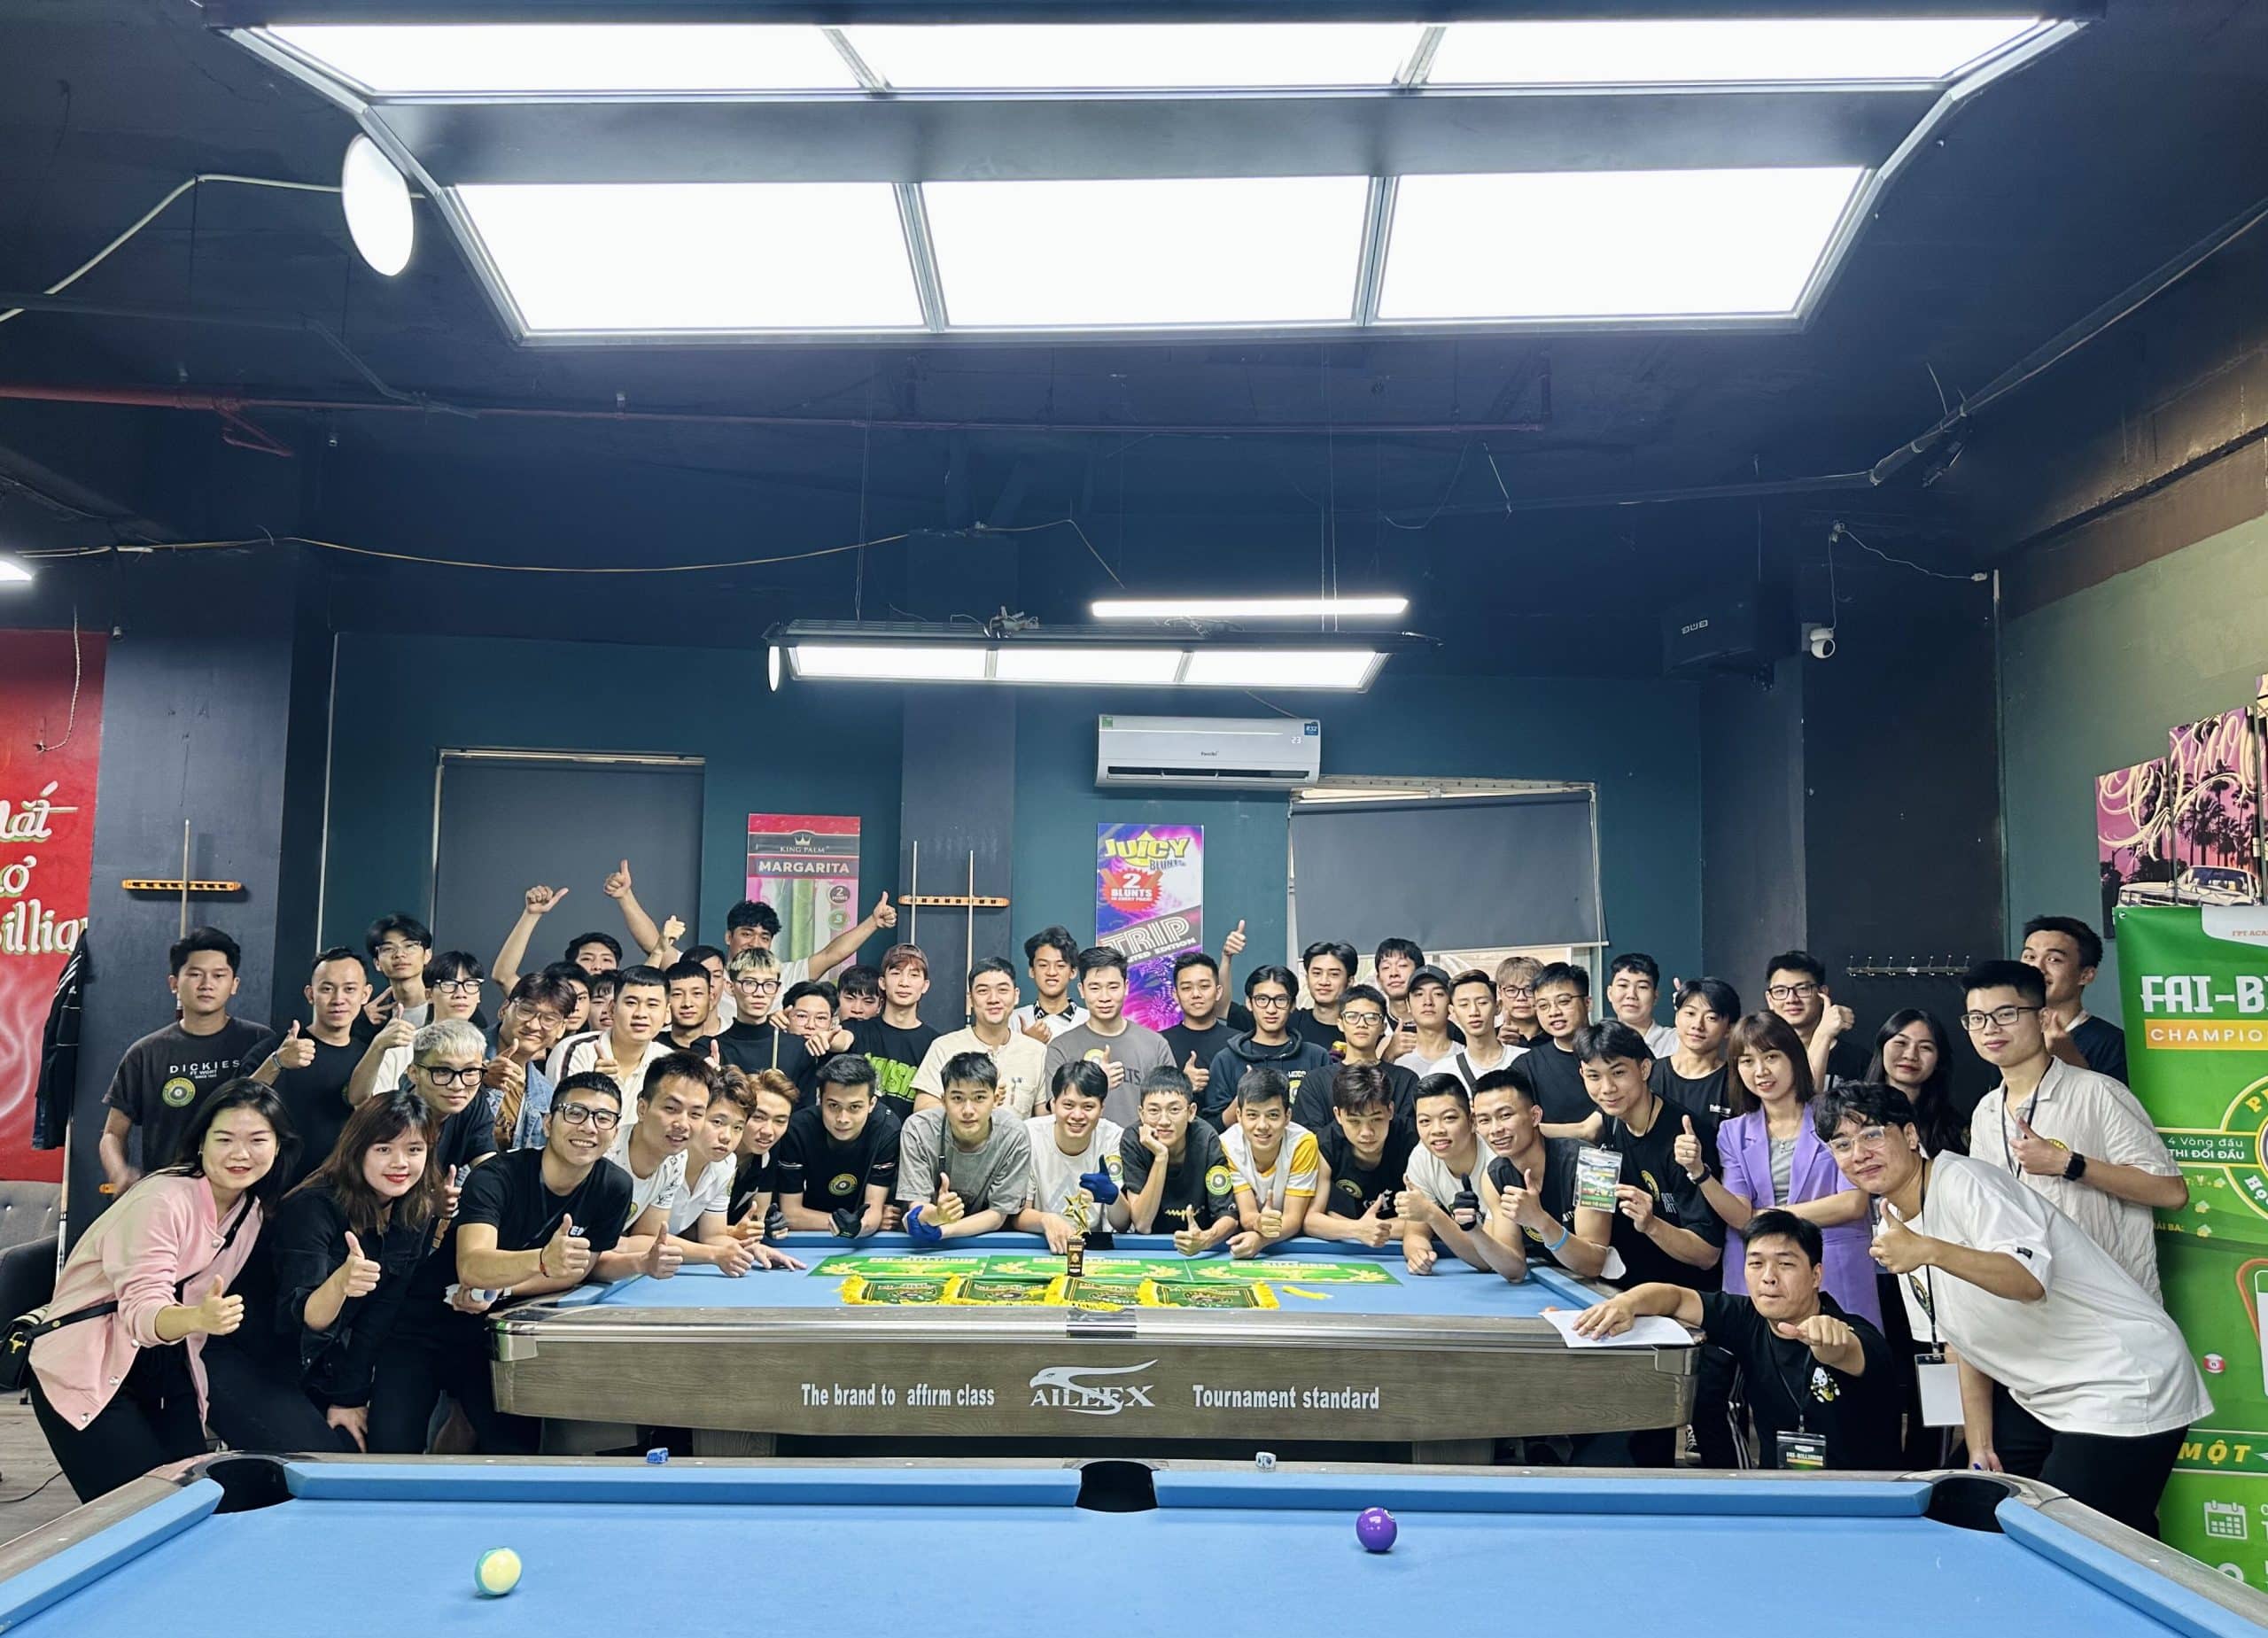 01 FAI – Billiards Championship 2023 scaled